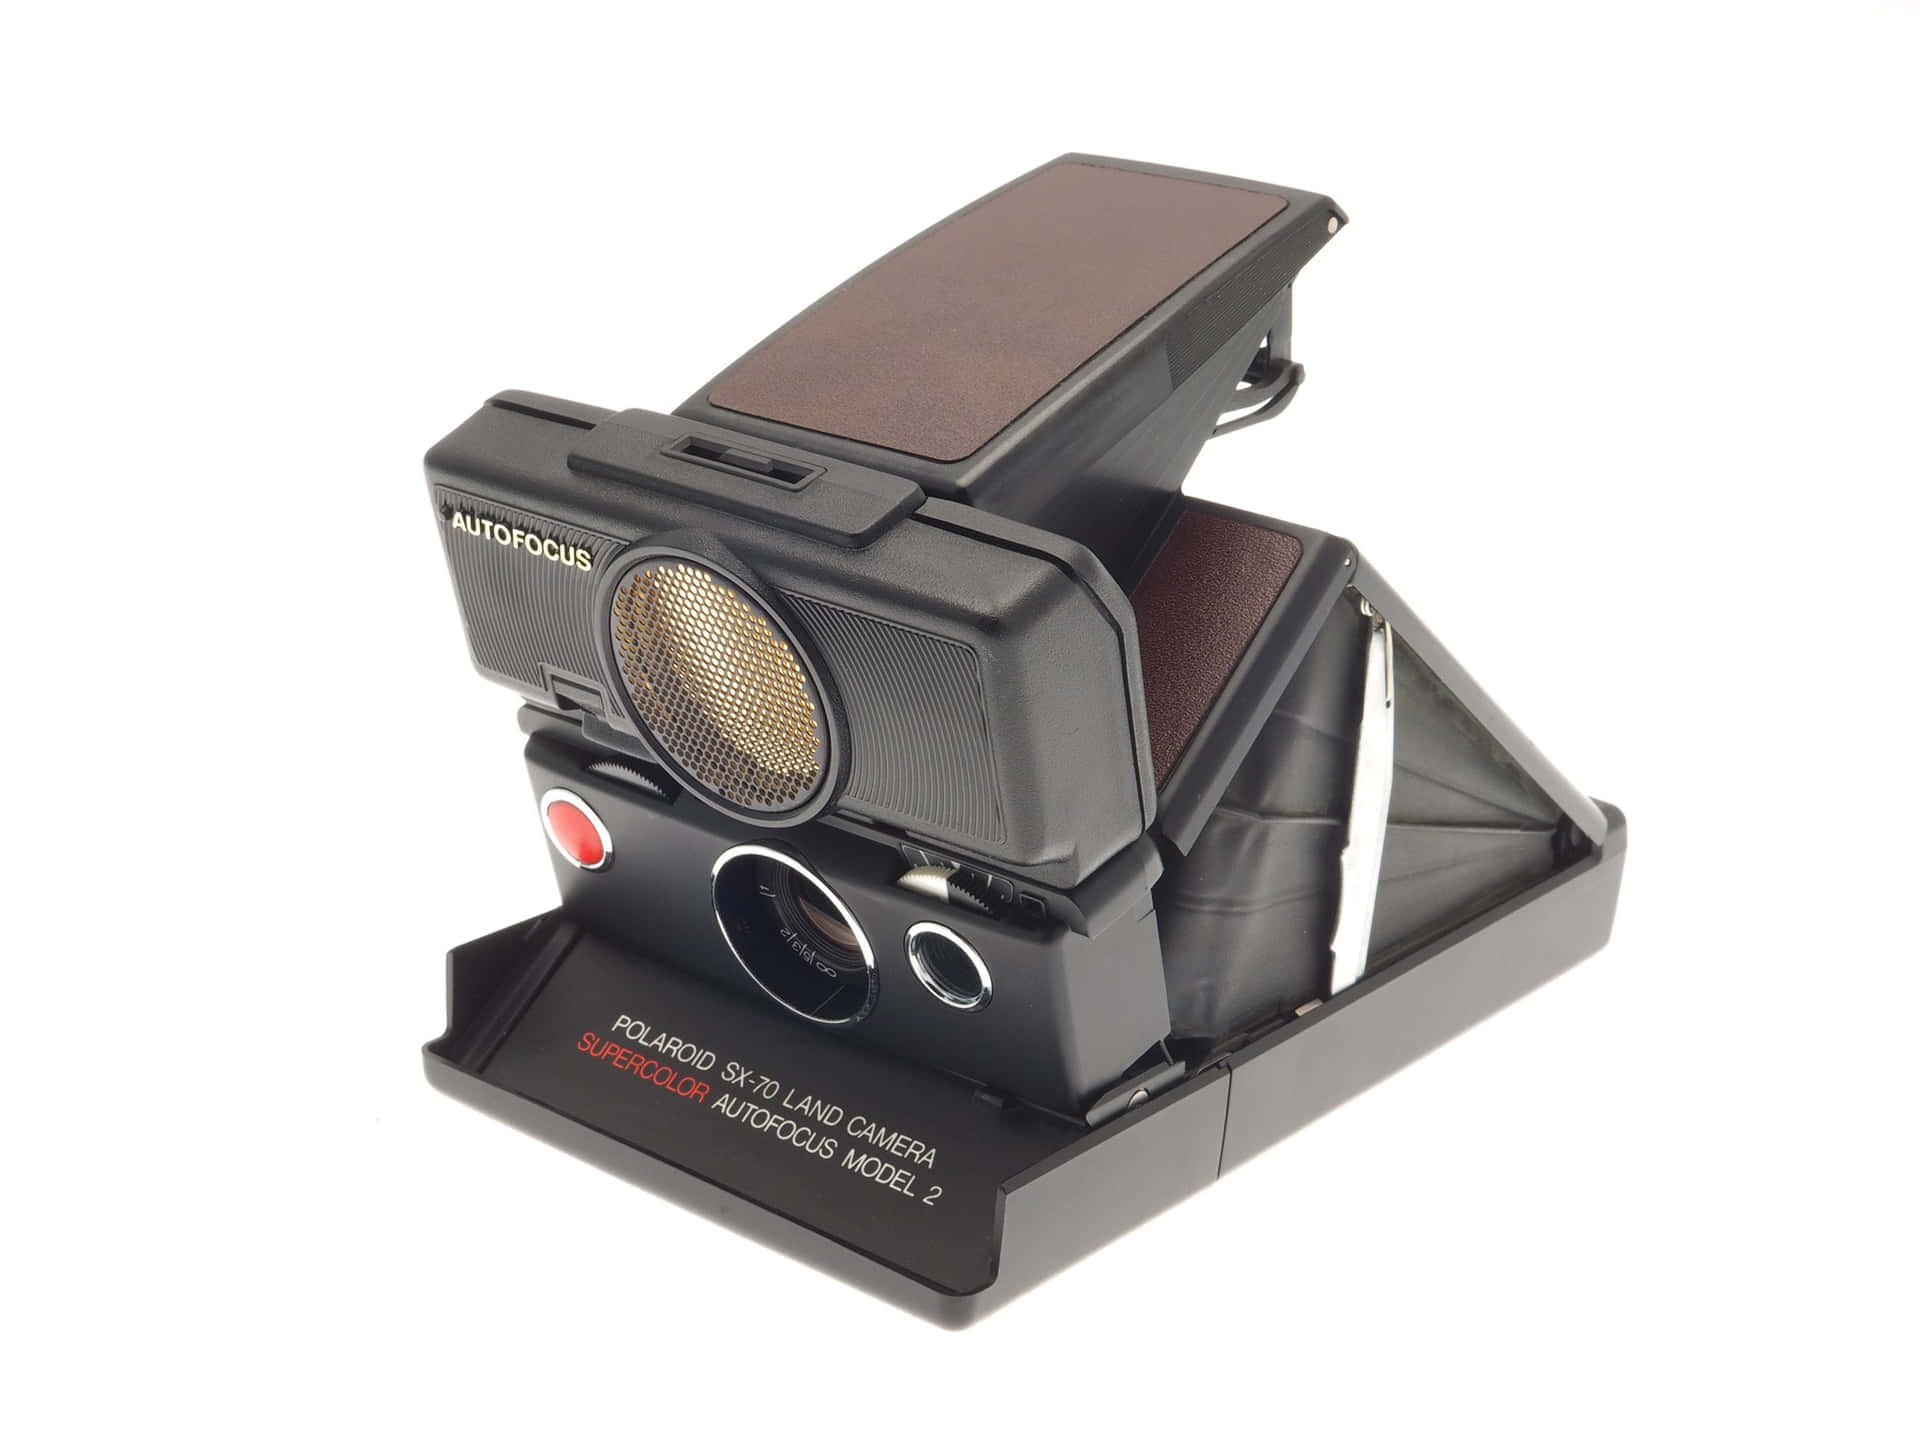 Vintage Autofocus Polaroid Camera Picture